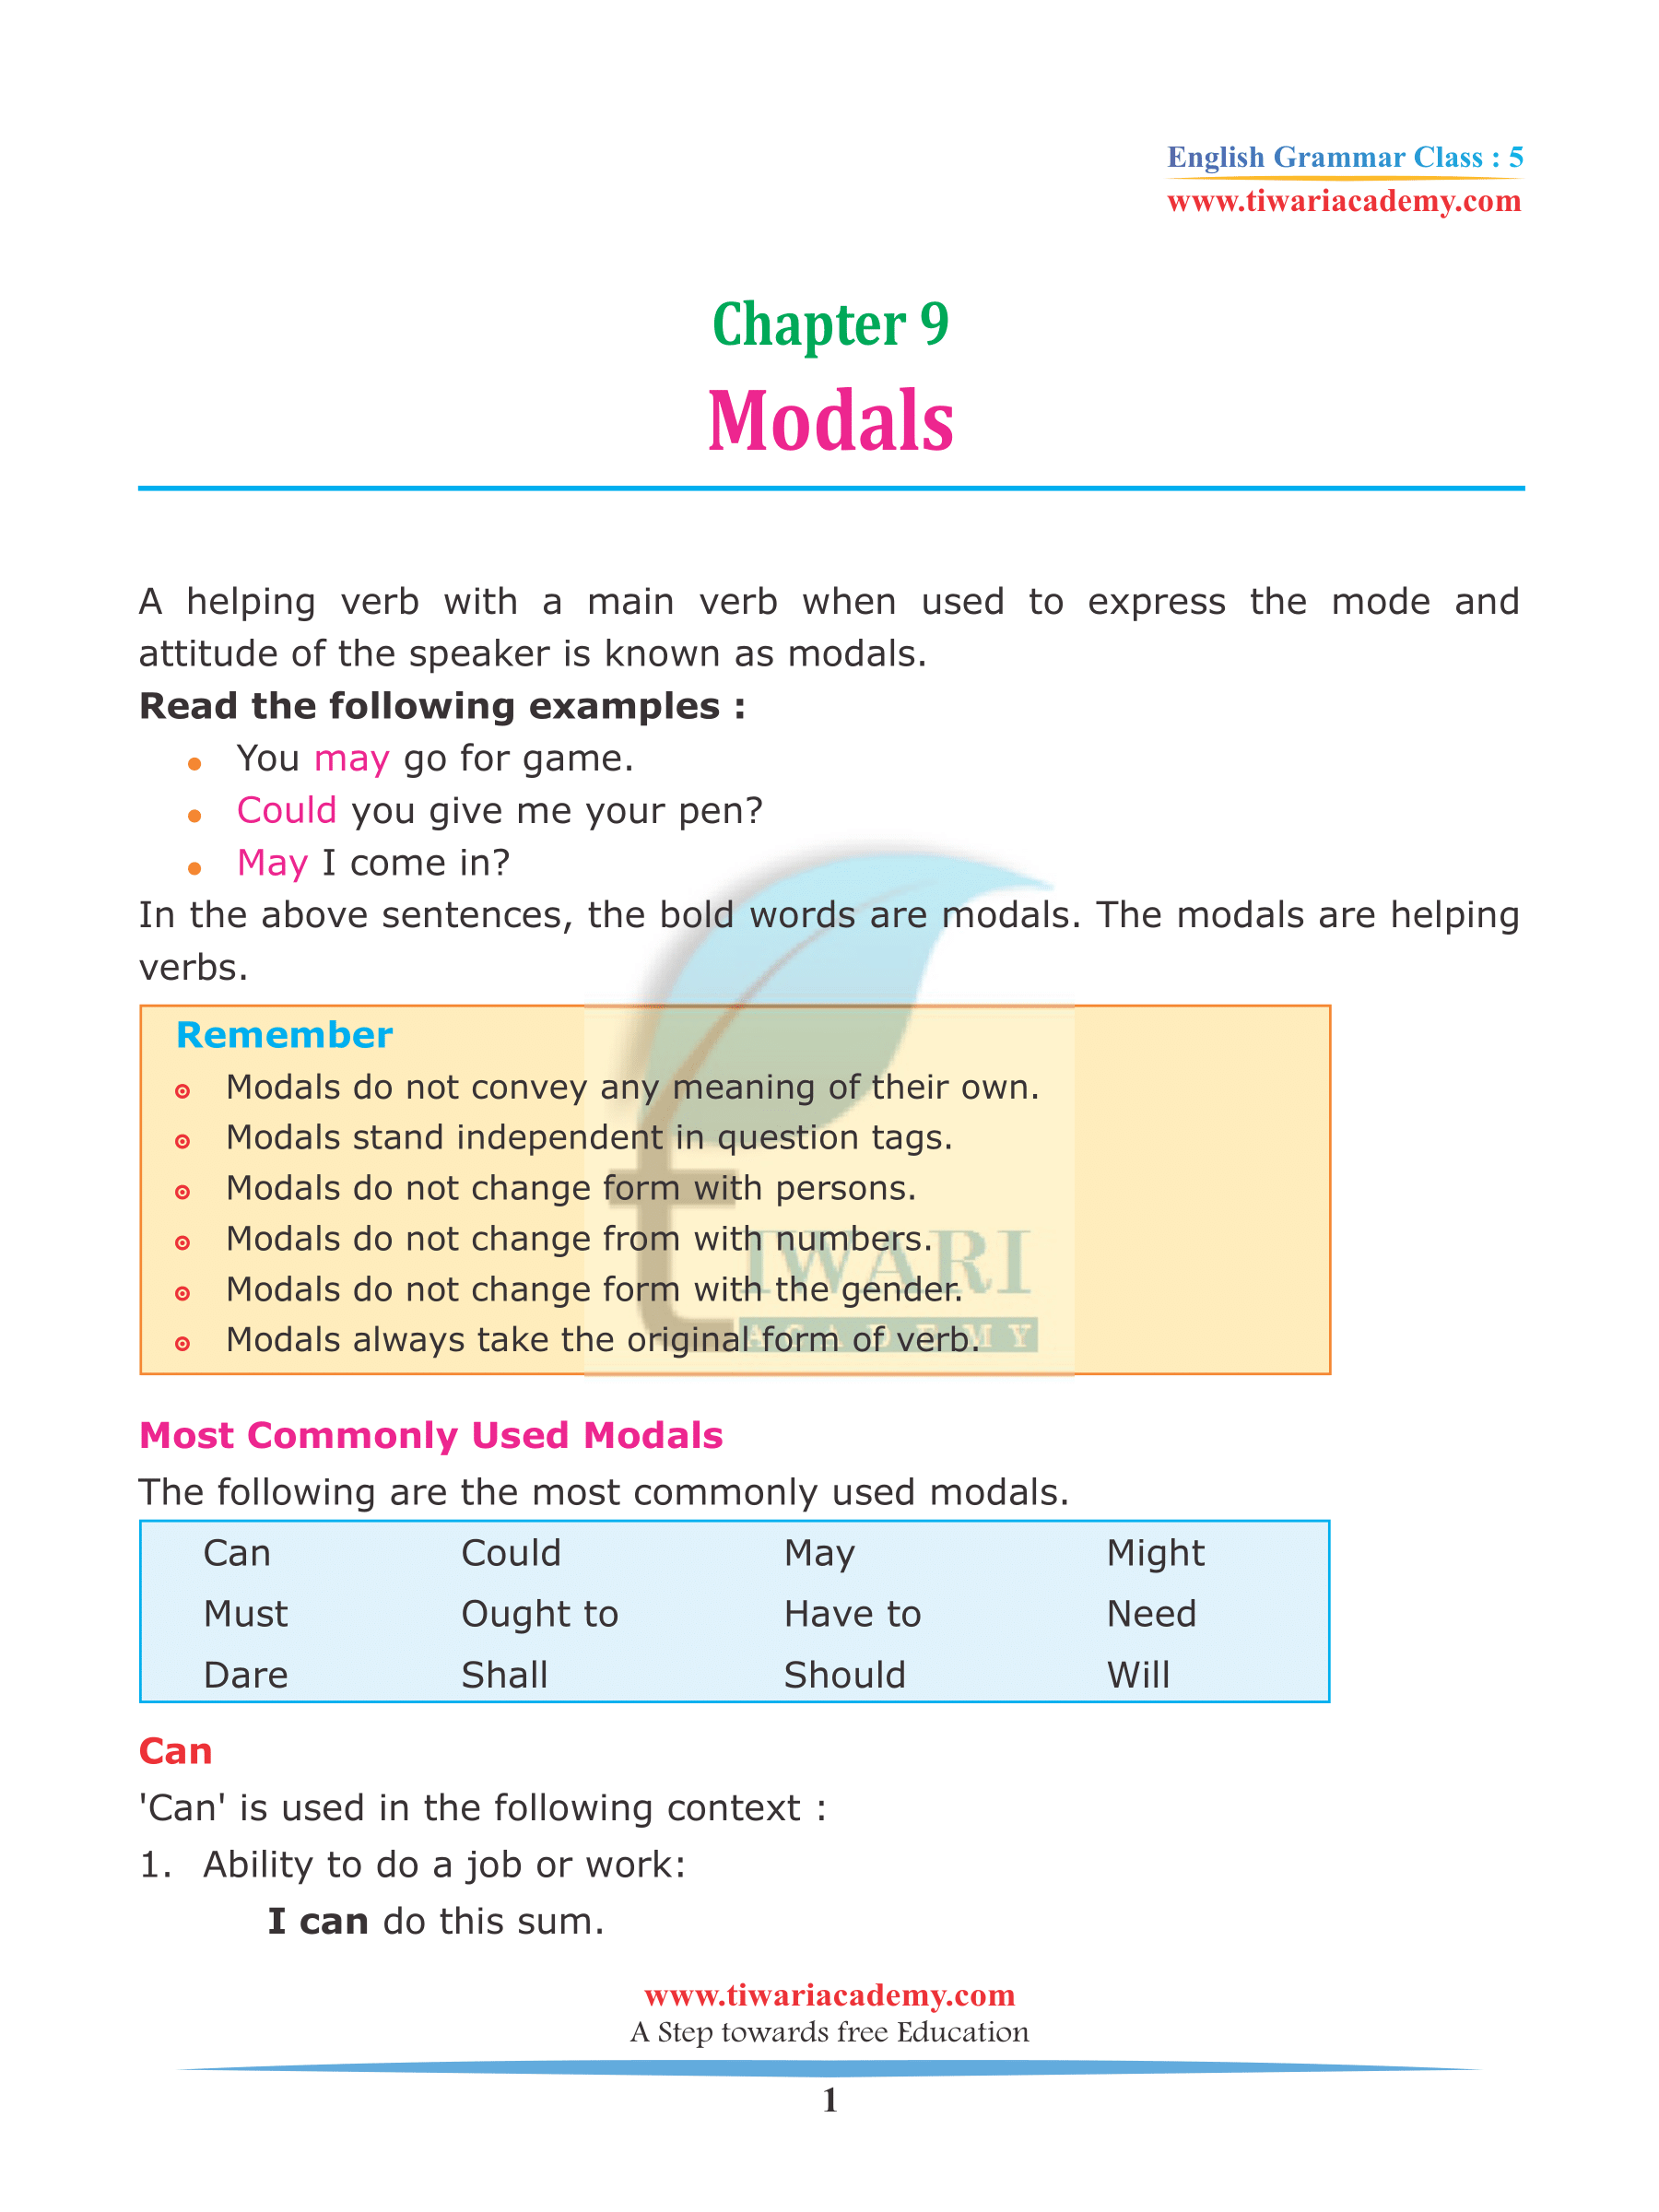 Class 5 English Grammar Chapter 9 Modals